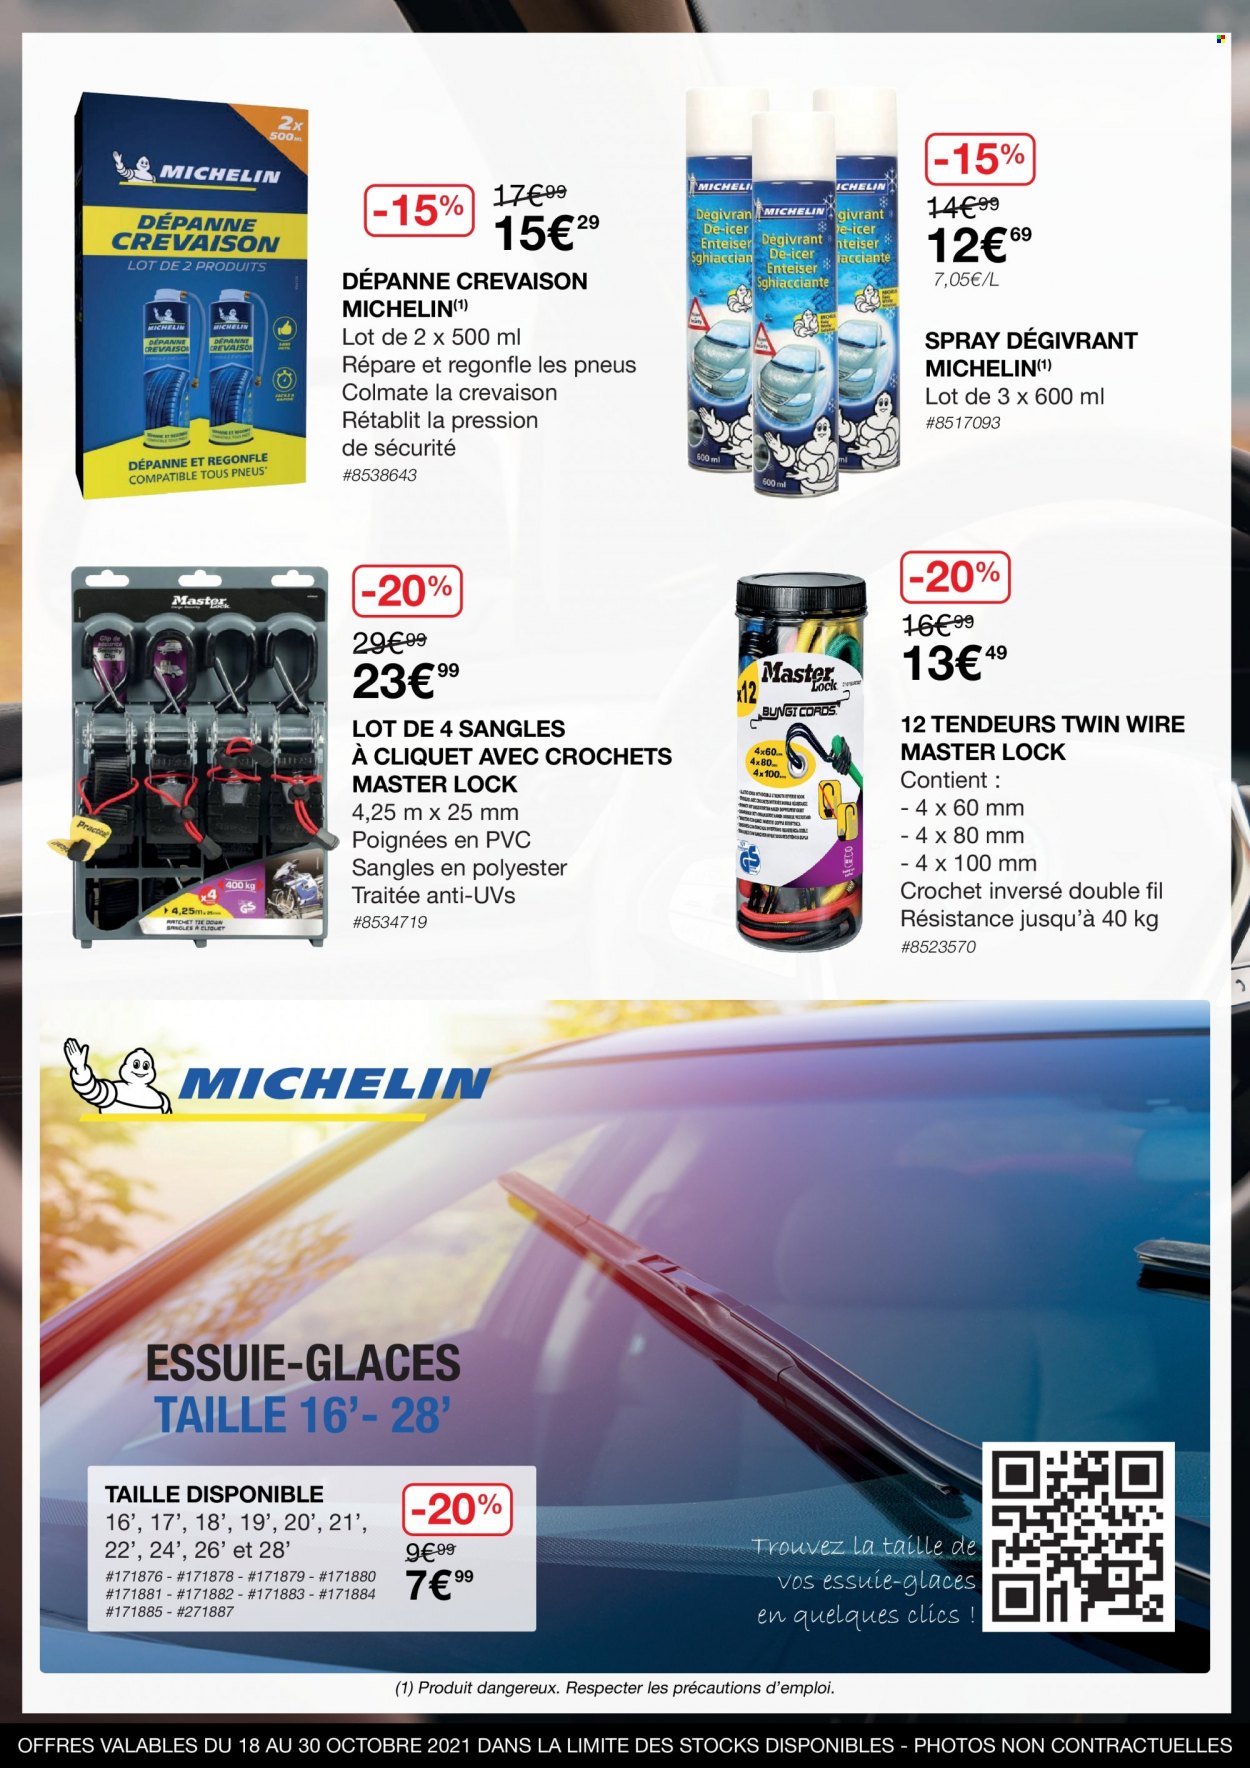 thumbnail - Catalogue Costco - 18/10/2021 - 30/10/2021 - Produits soldés - glace, tendeur, spray degivrant, Michelin. Page 5.